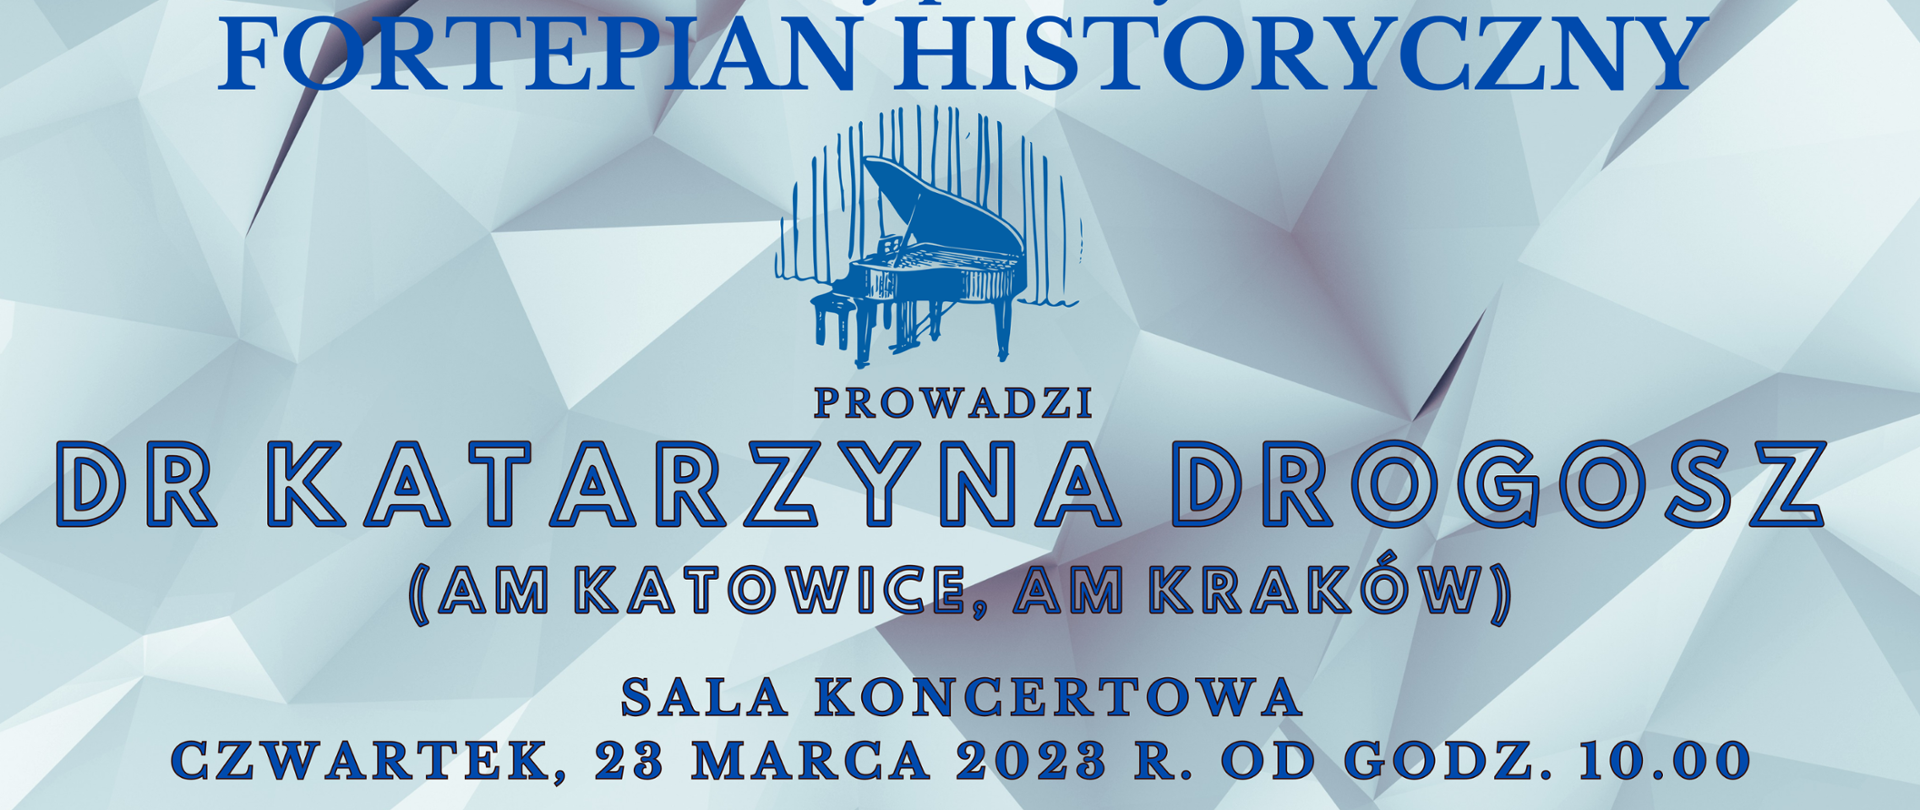 Baner zapraszający na Warsztaty FORTEPIAN HISTORYCZNY - prowadzi Katarzyna Drogosz, 23 marca 2023 r. od godz. 10 w Sali Koncertowej z ikoną fortepianu, napis niebieski na szarym tle. 